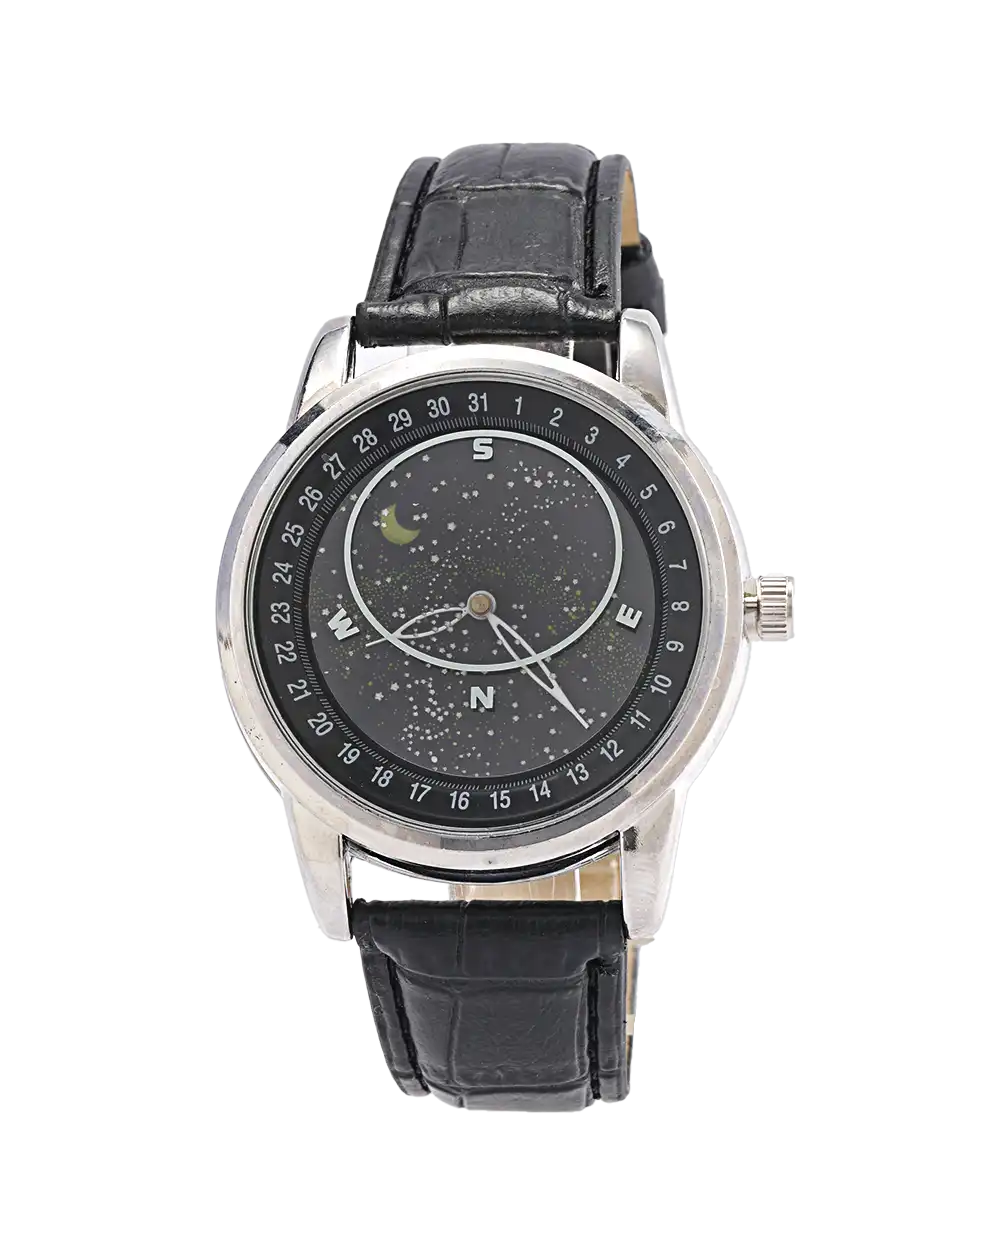 خرید ساعت مچی مردانه گلکسی GALAXY طرح کهکشانی مدل 1800 بند مشکی با صفحه ی متحرک و بهترین قیمت به همراه جعبه و ارسال رایگان به سراسر ایران